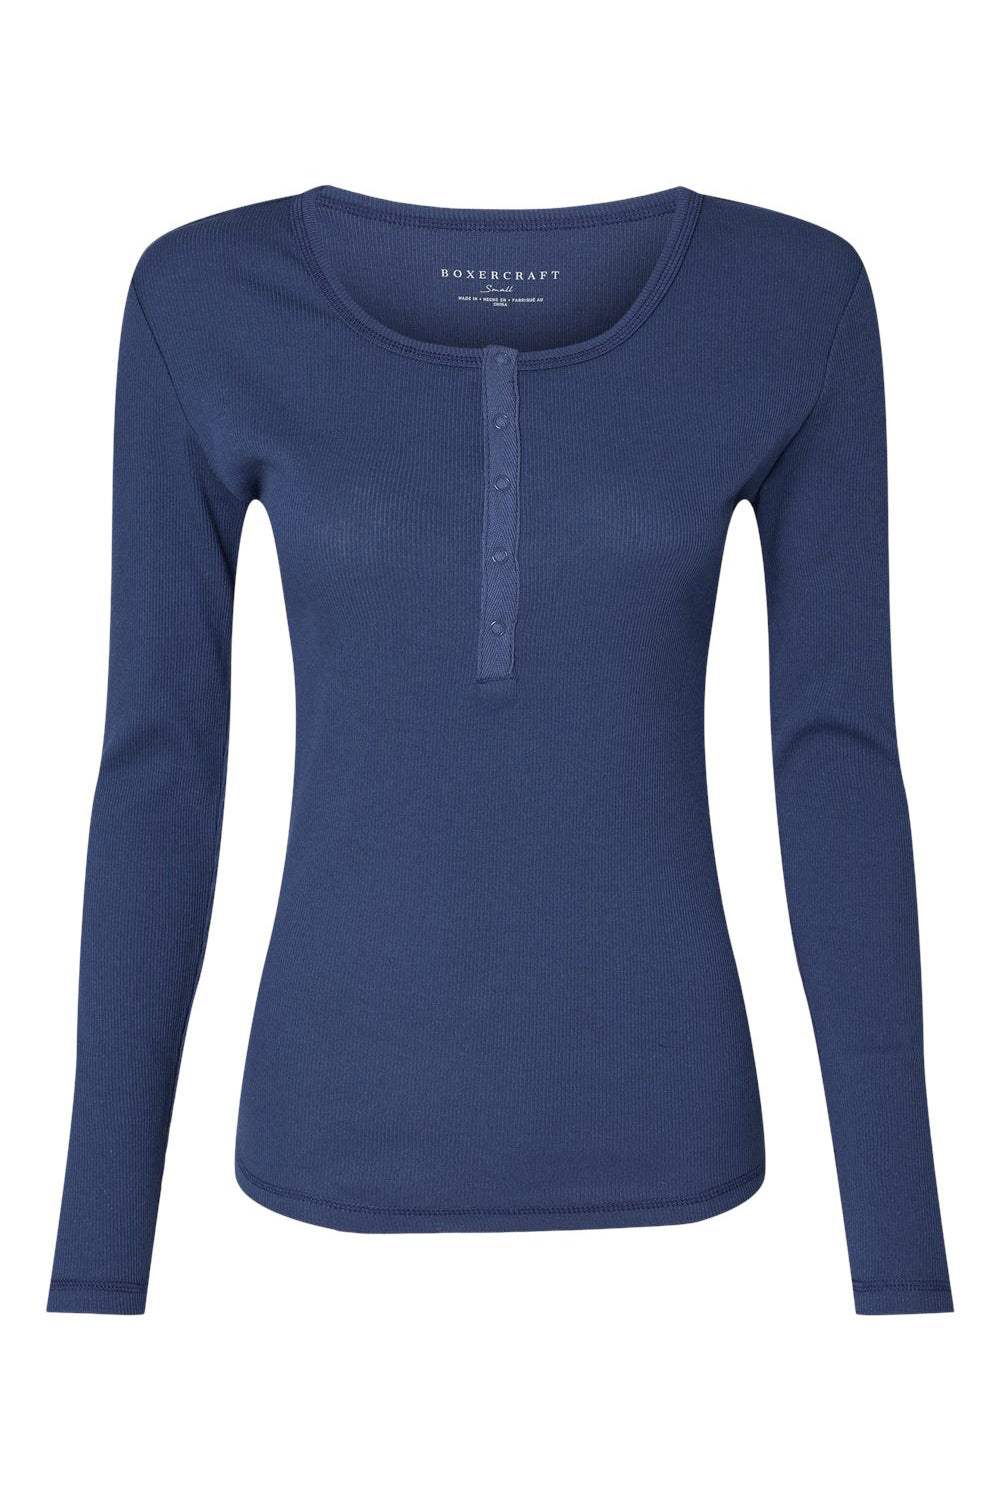 Boxercraft BW2402 Womens Harper Long Sleeve Henley T-Shirt Navy Blue Flat Front